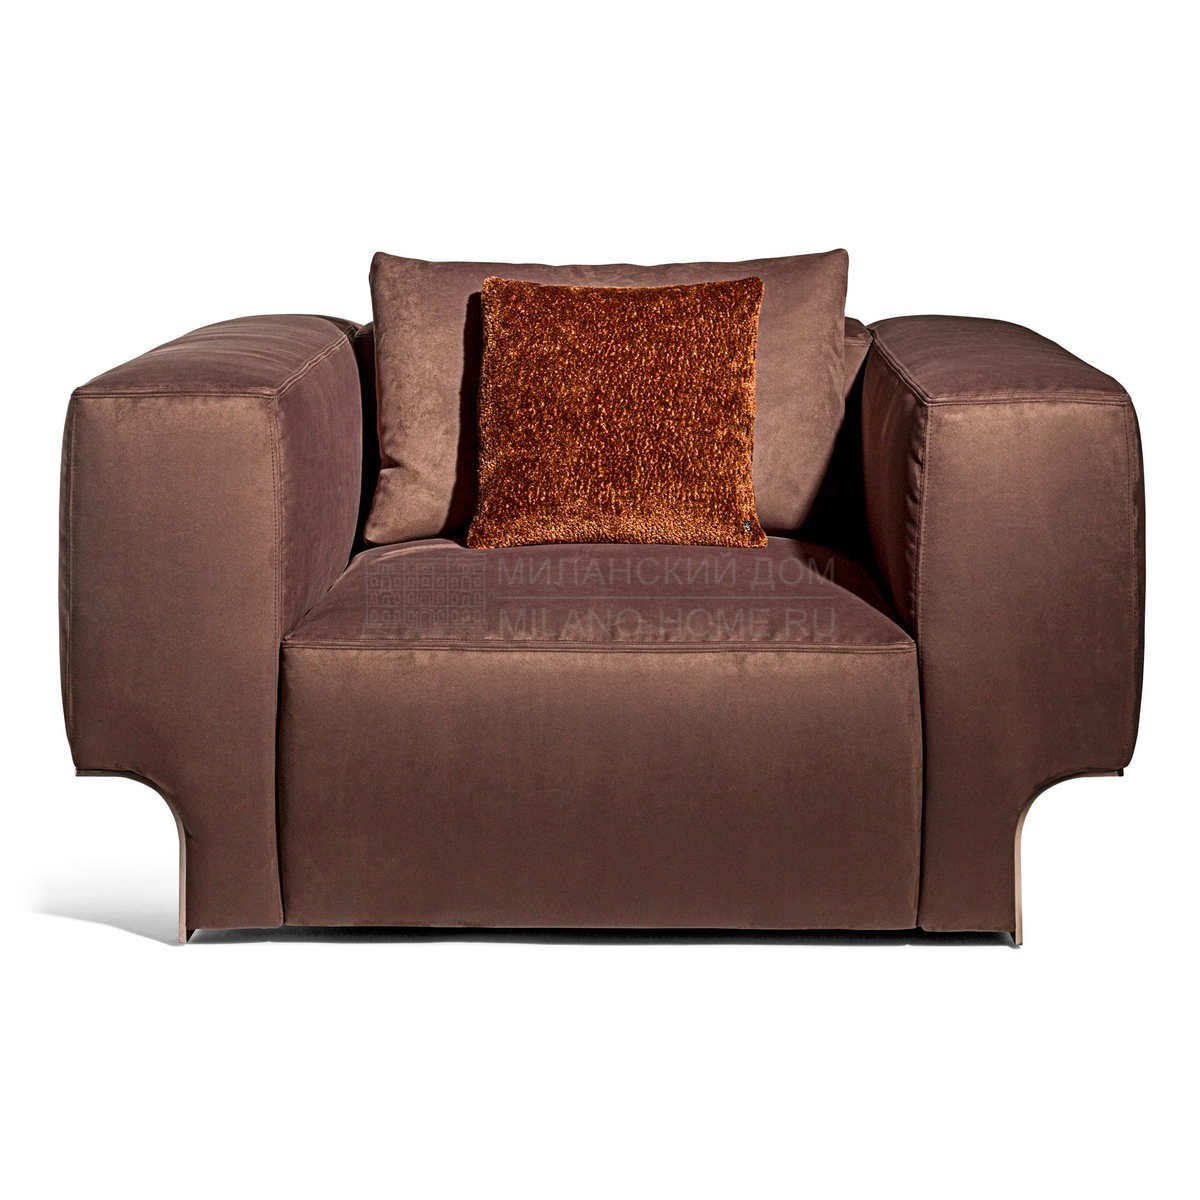 Кожаное кресло Douglas armchair из Италии фабрики IPE CAVALLI VISIONNAIRE